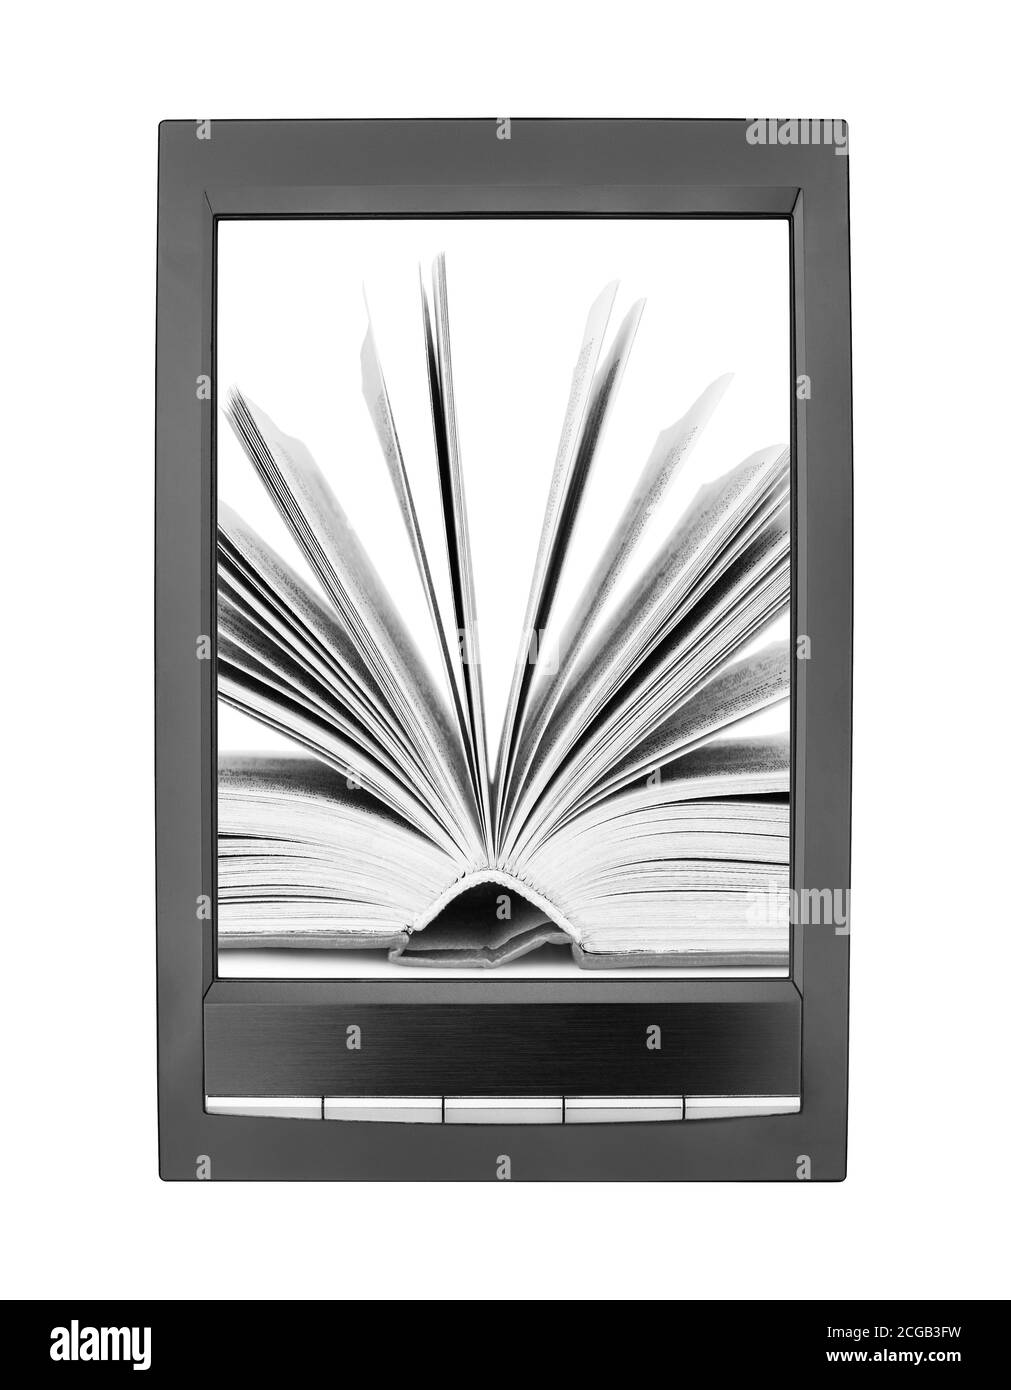 Öffnen Sie Papier Buch Umblättern Seiten auf elektronische Buch-Display weißen Hintergrund isoliert Nahaufnahme, Lehrbuch Umblättern Seiten auf E-Book-Bildschirm, E-Reader Tablet Stockfoto